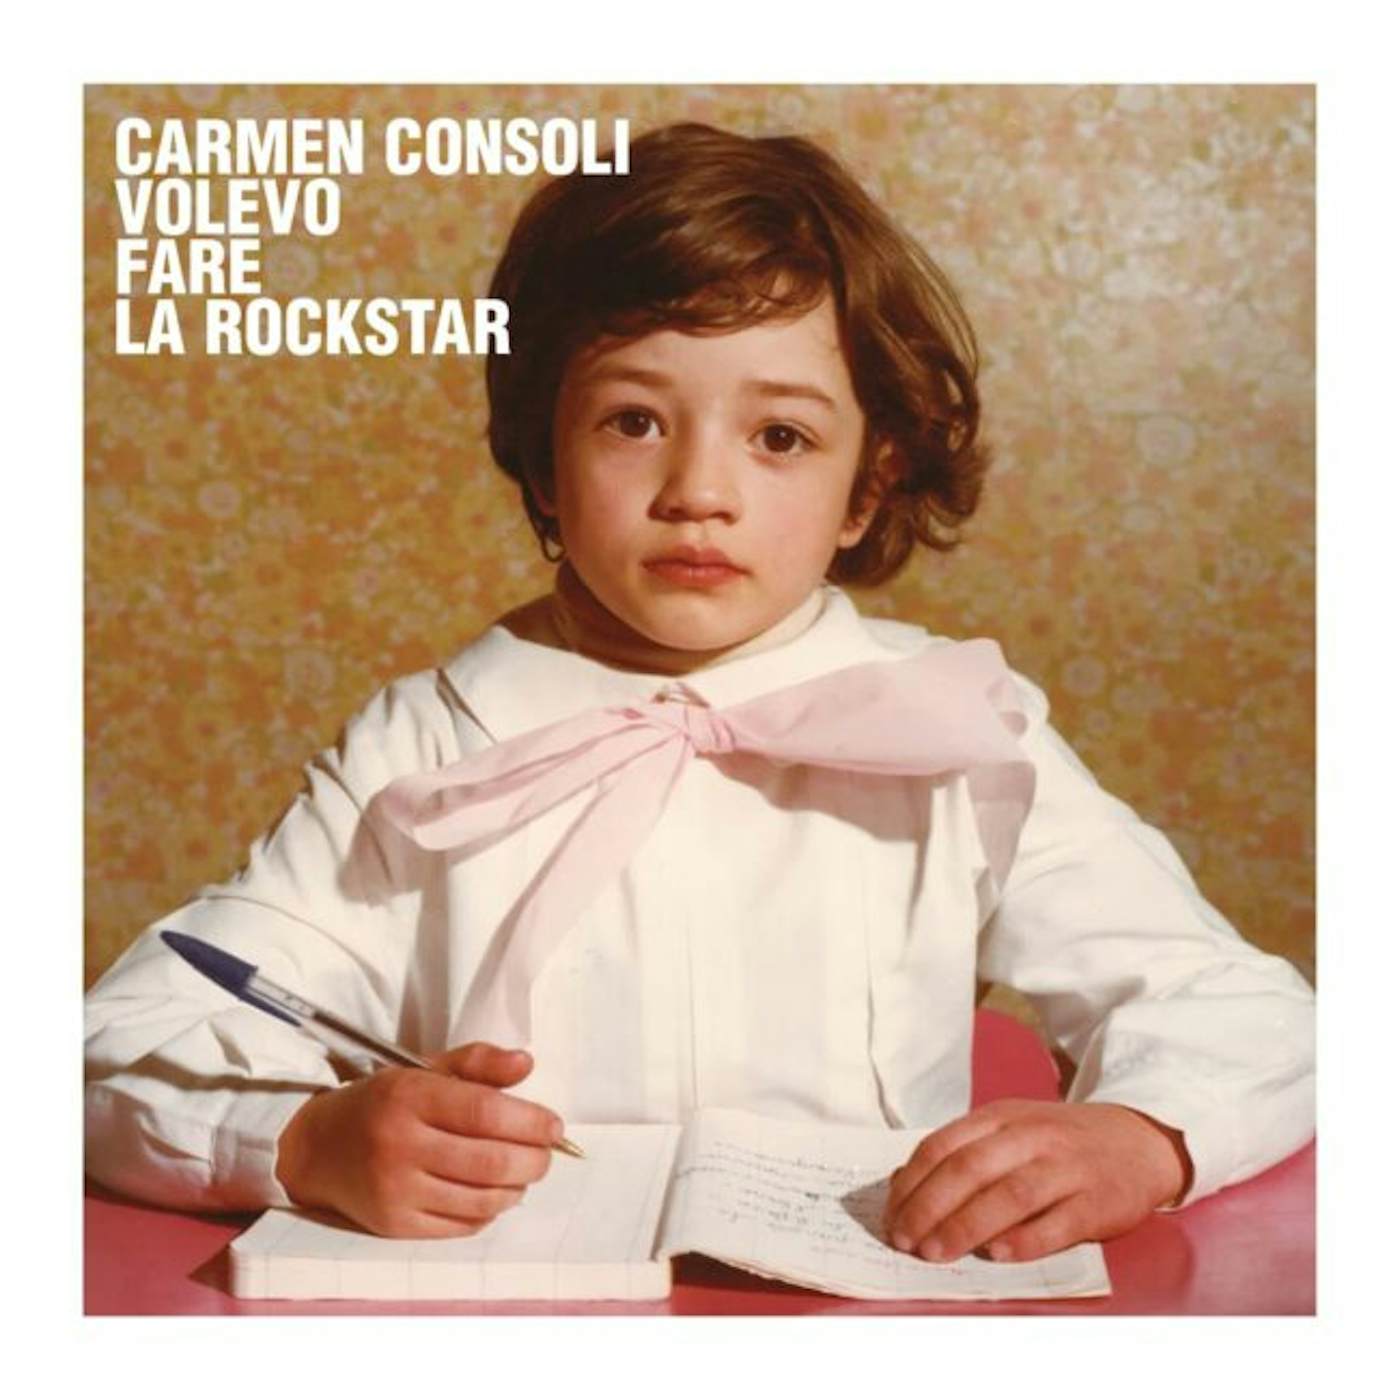 Carmen Consoli Volevo Fare La Rockstar Vinyl Record